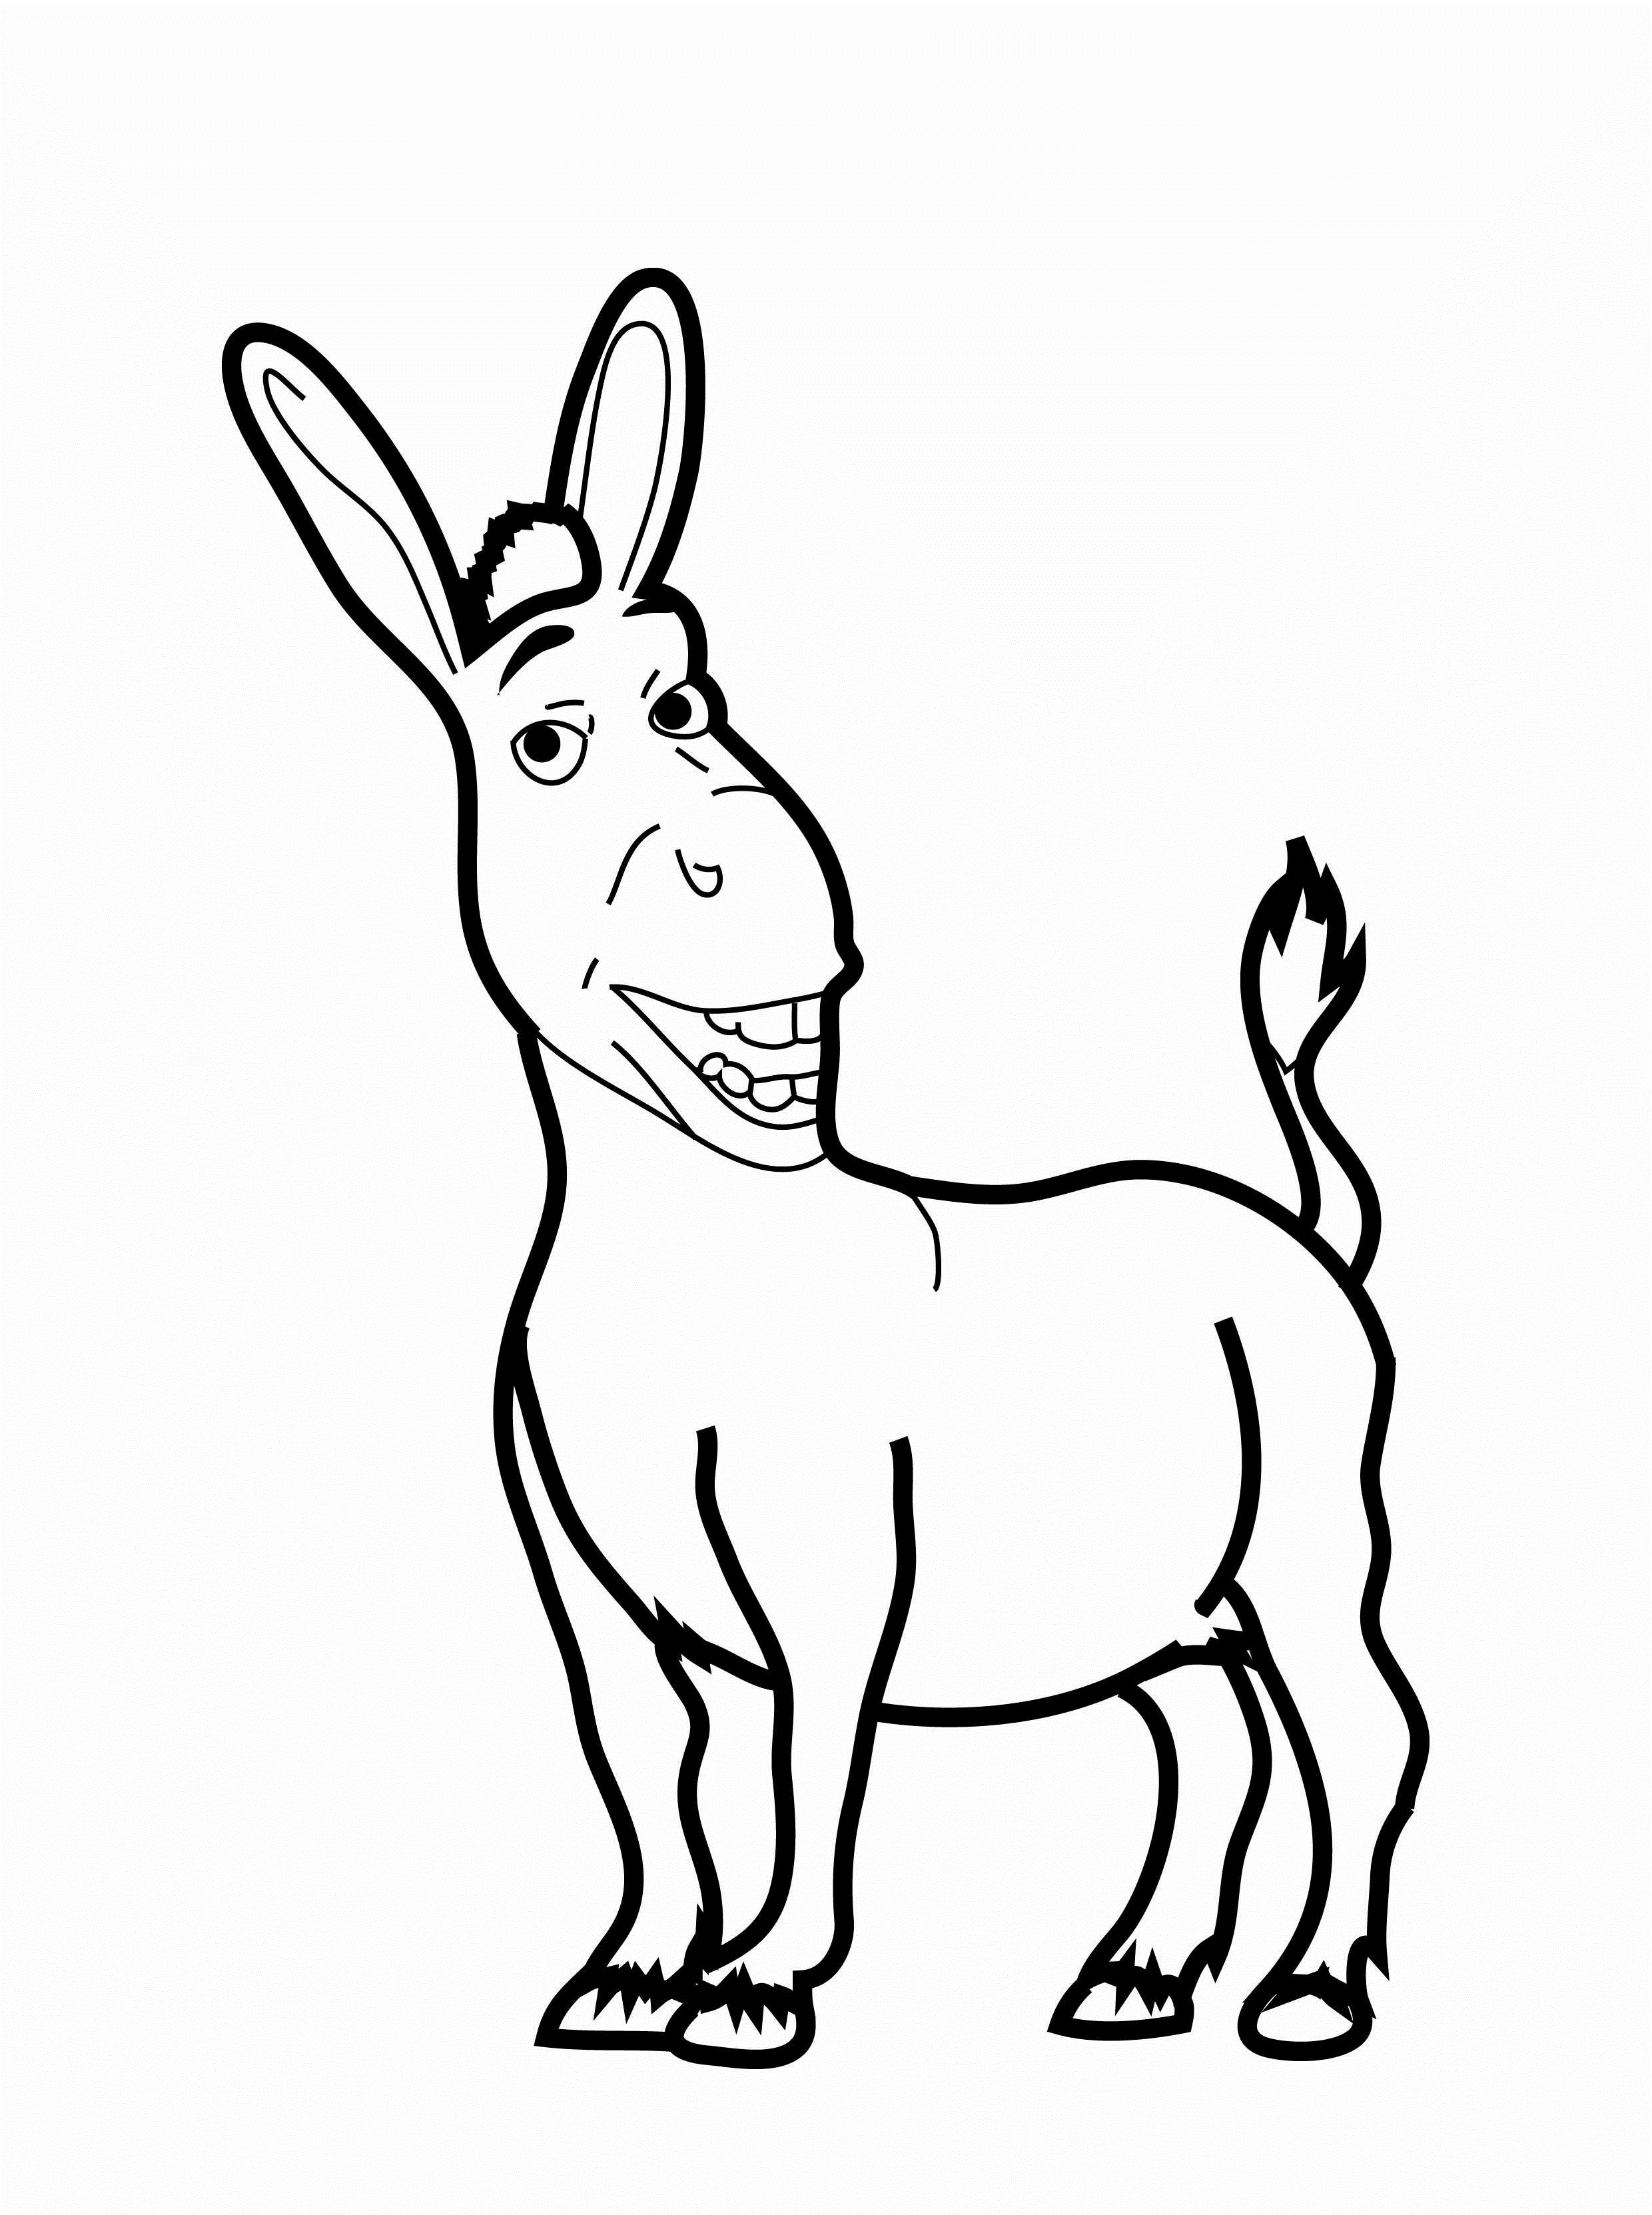 Donkey Template Printable - Printable World Holiday